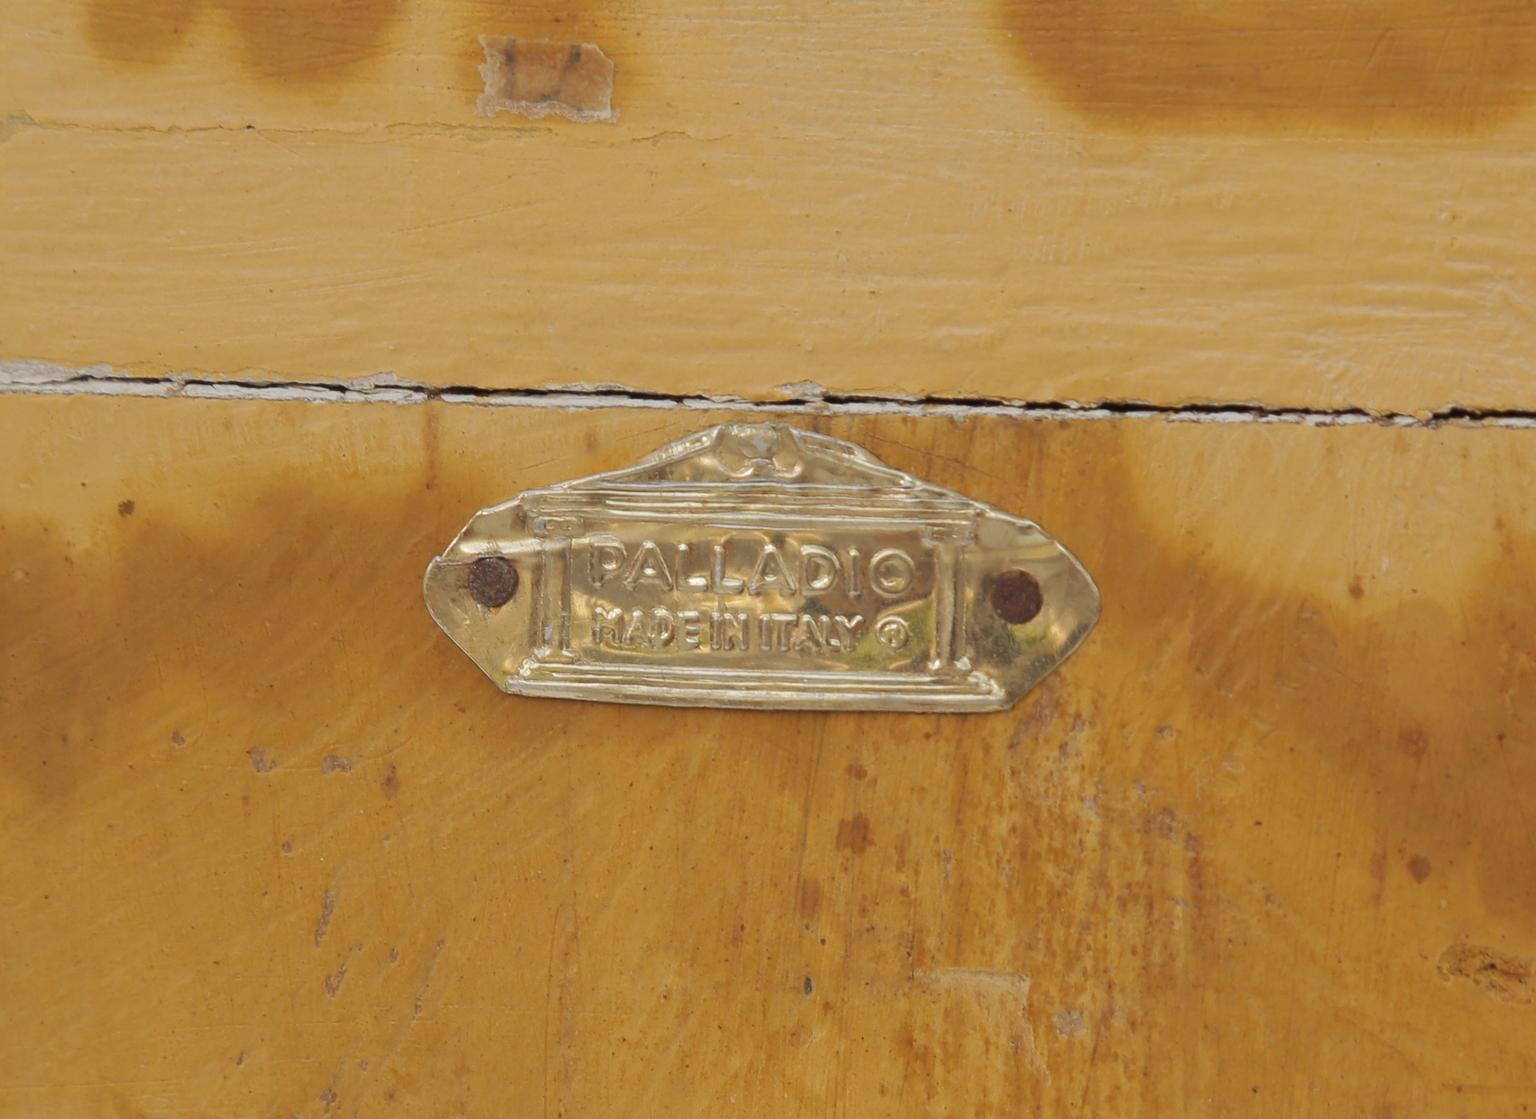 Schmaler Konsolentisch mit Demilune-Säule von Palladio (Holz)